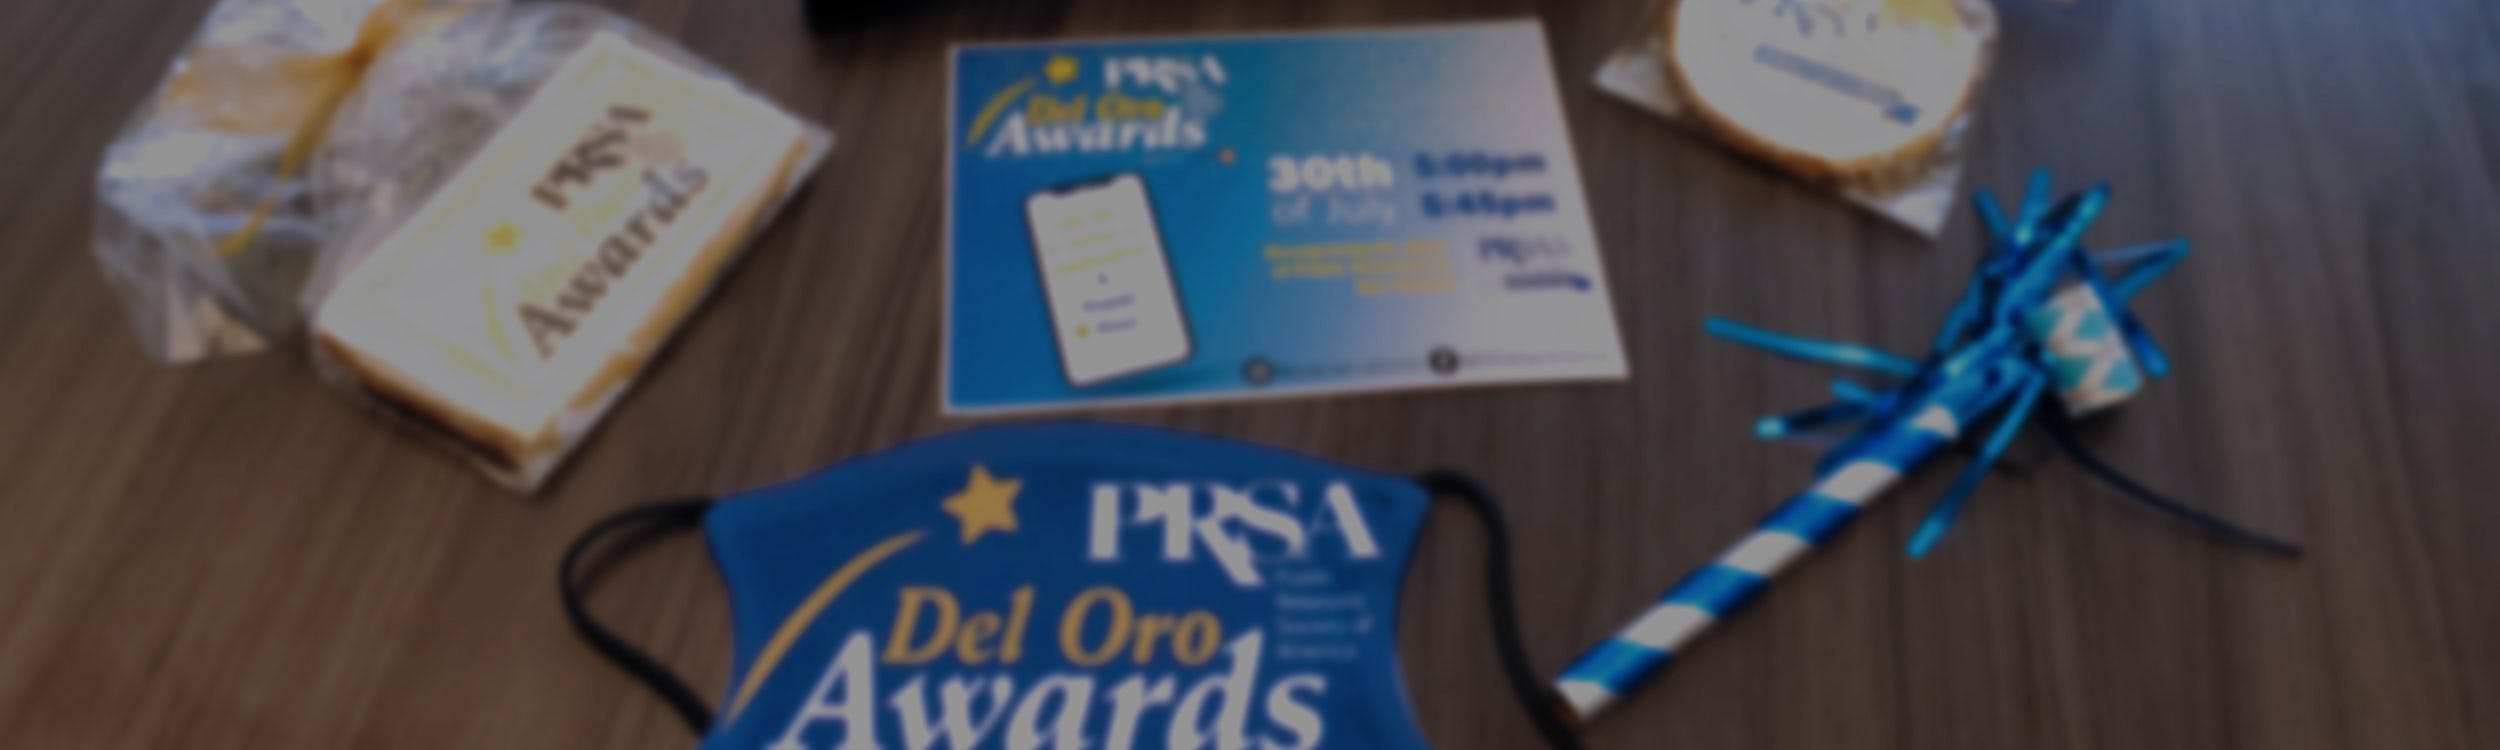 PRSA Del Oro Awards web banner